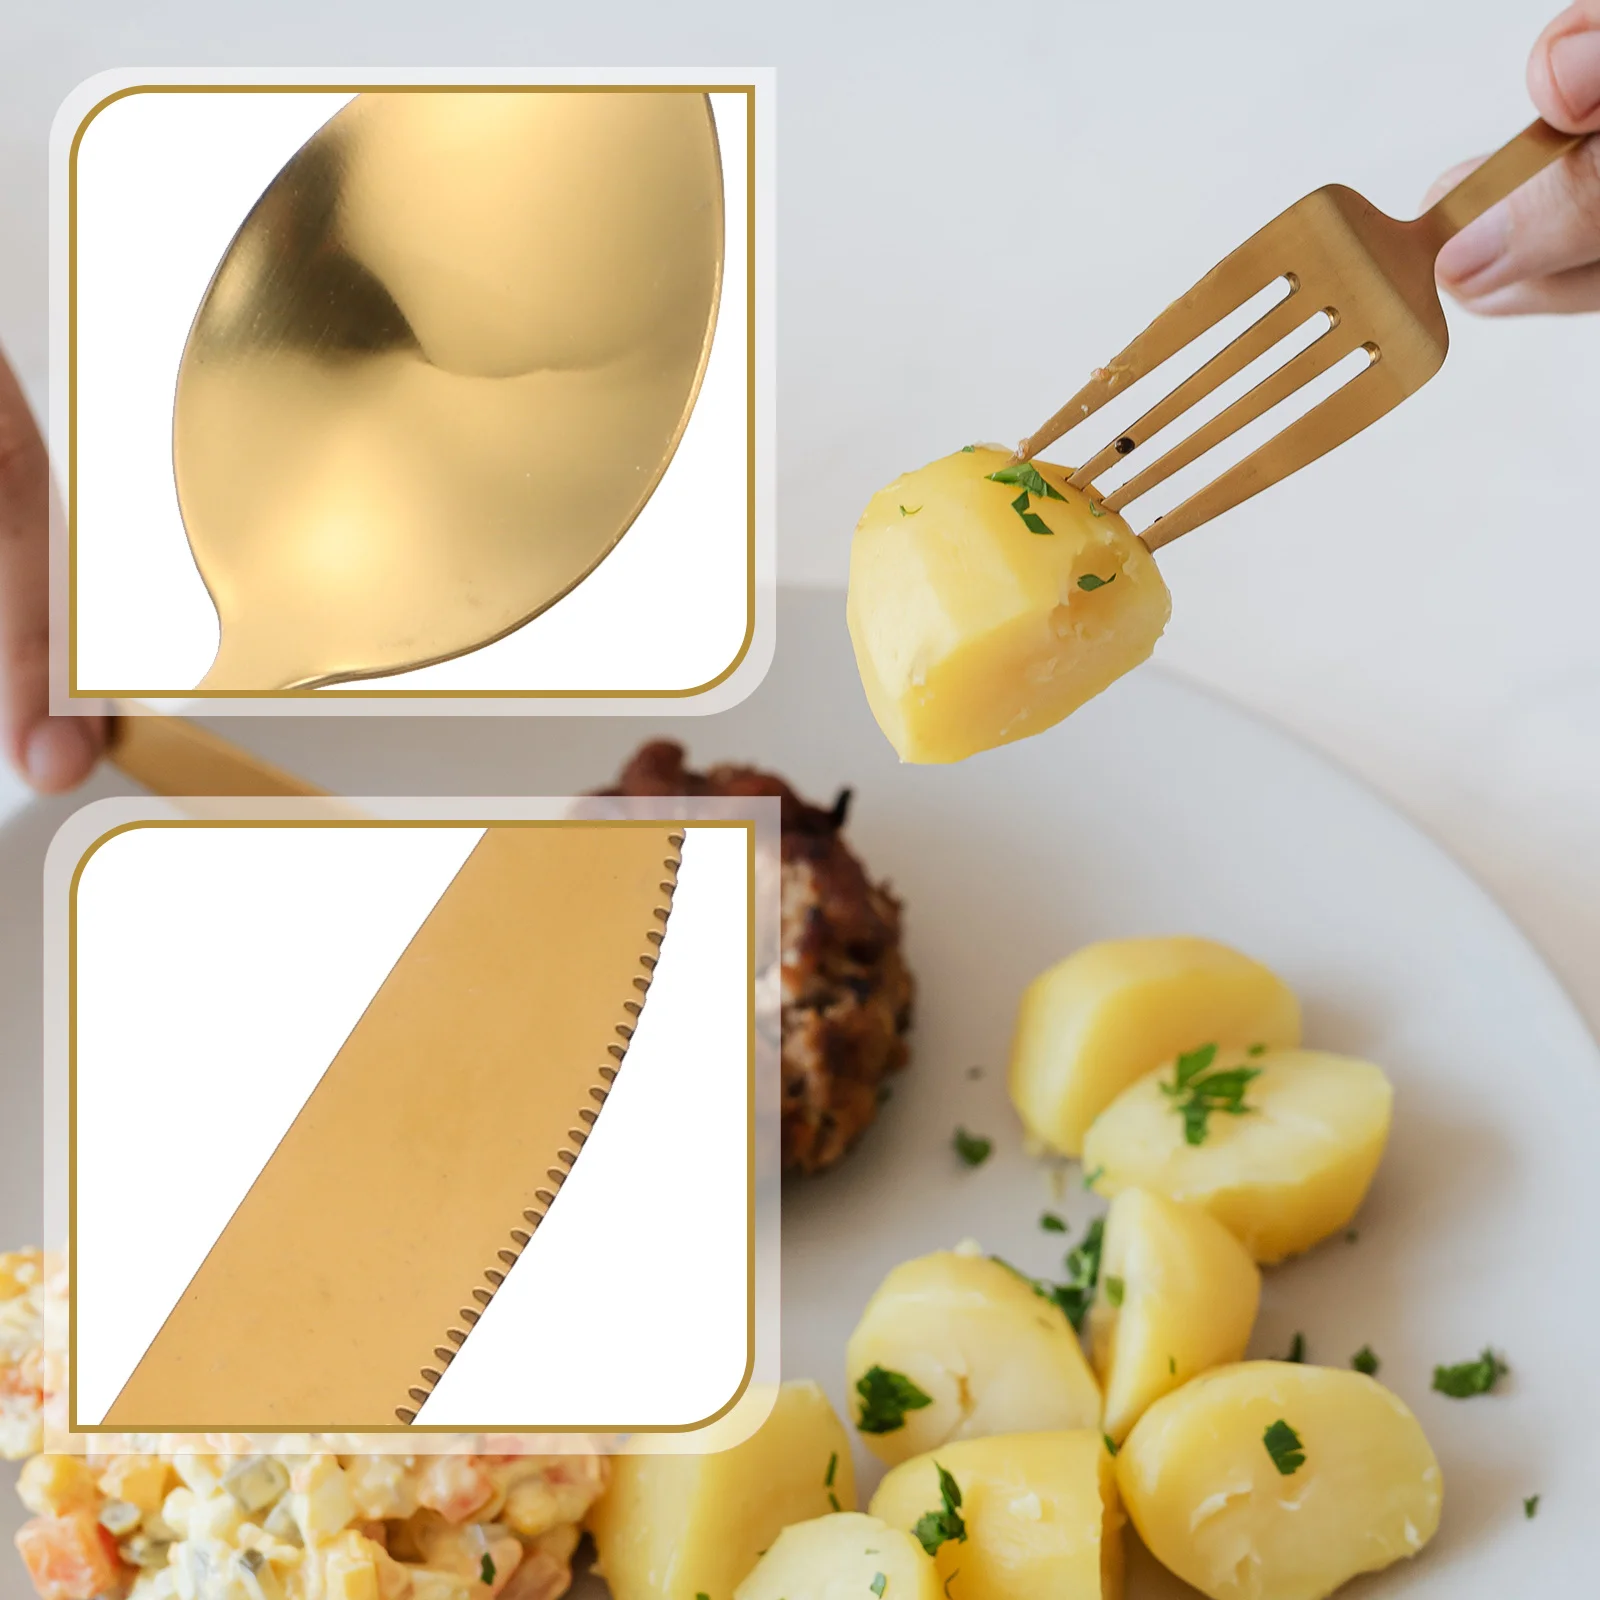 

Set Cutlery Stainless Steak Spoons Steel Dinner Fork Silverware Tableware Utensils Flatware Spoon Serving Gold Eating Kitchen